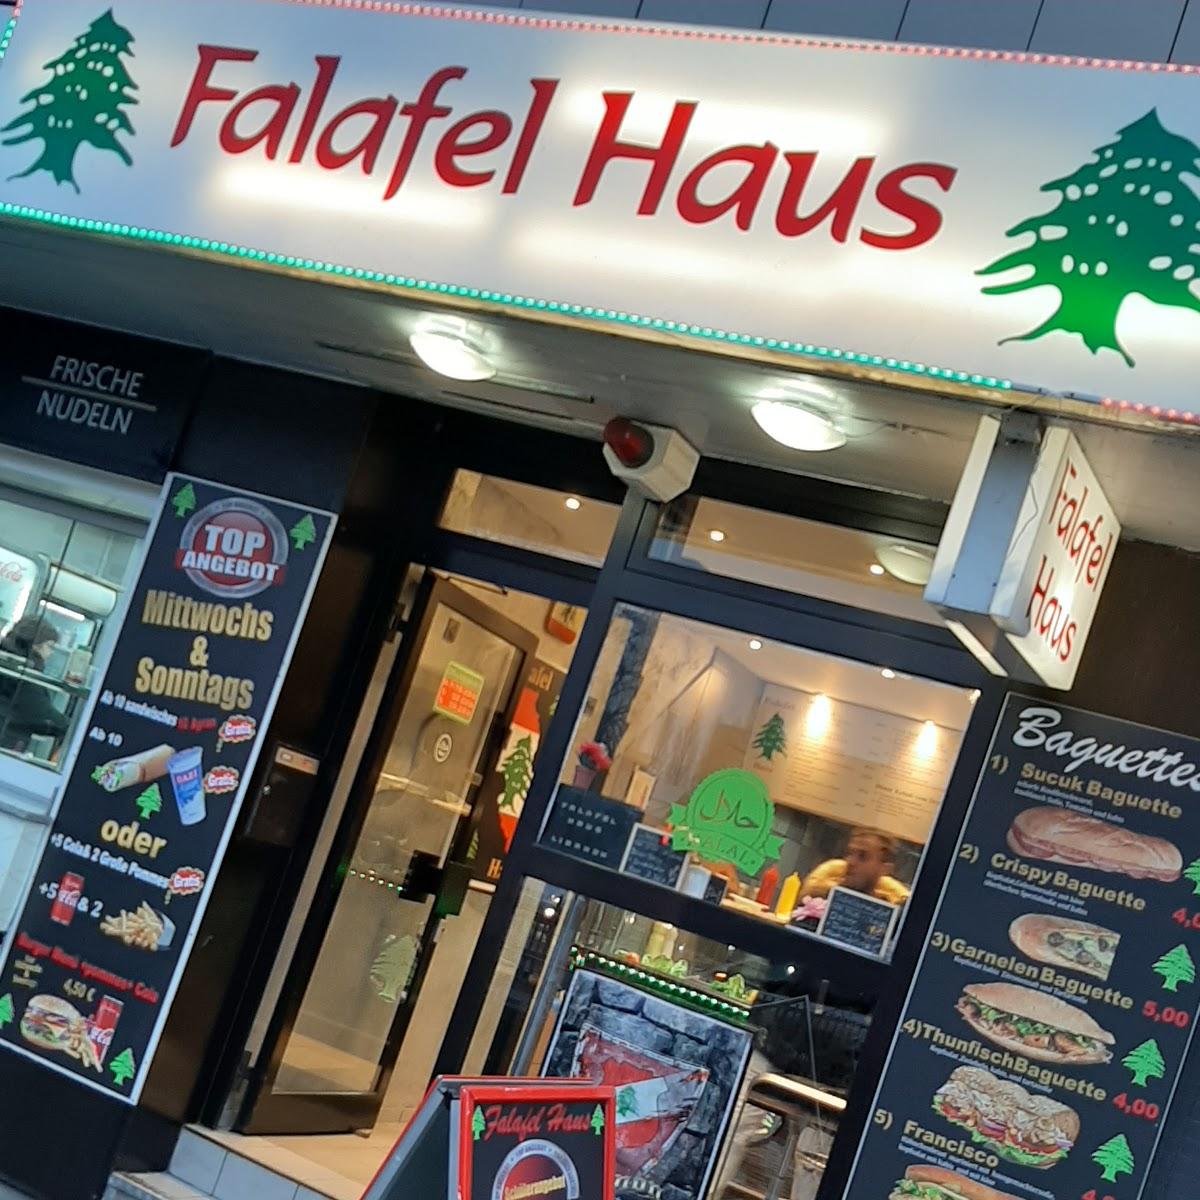 Restaurant "Falafel Haus" in Essen